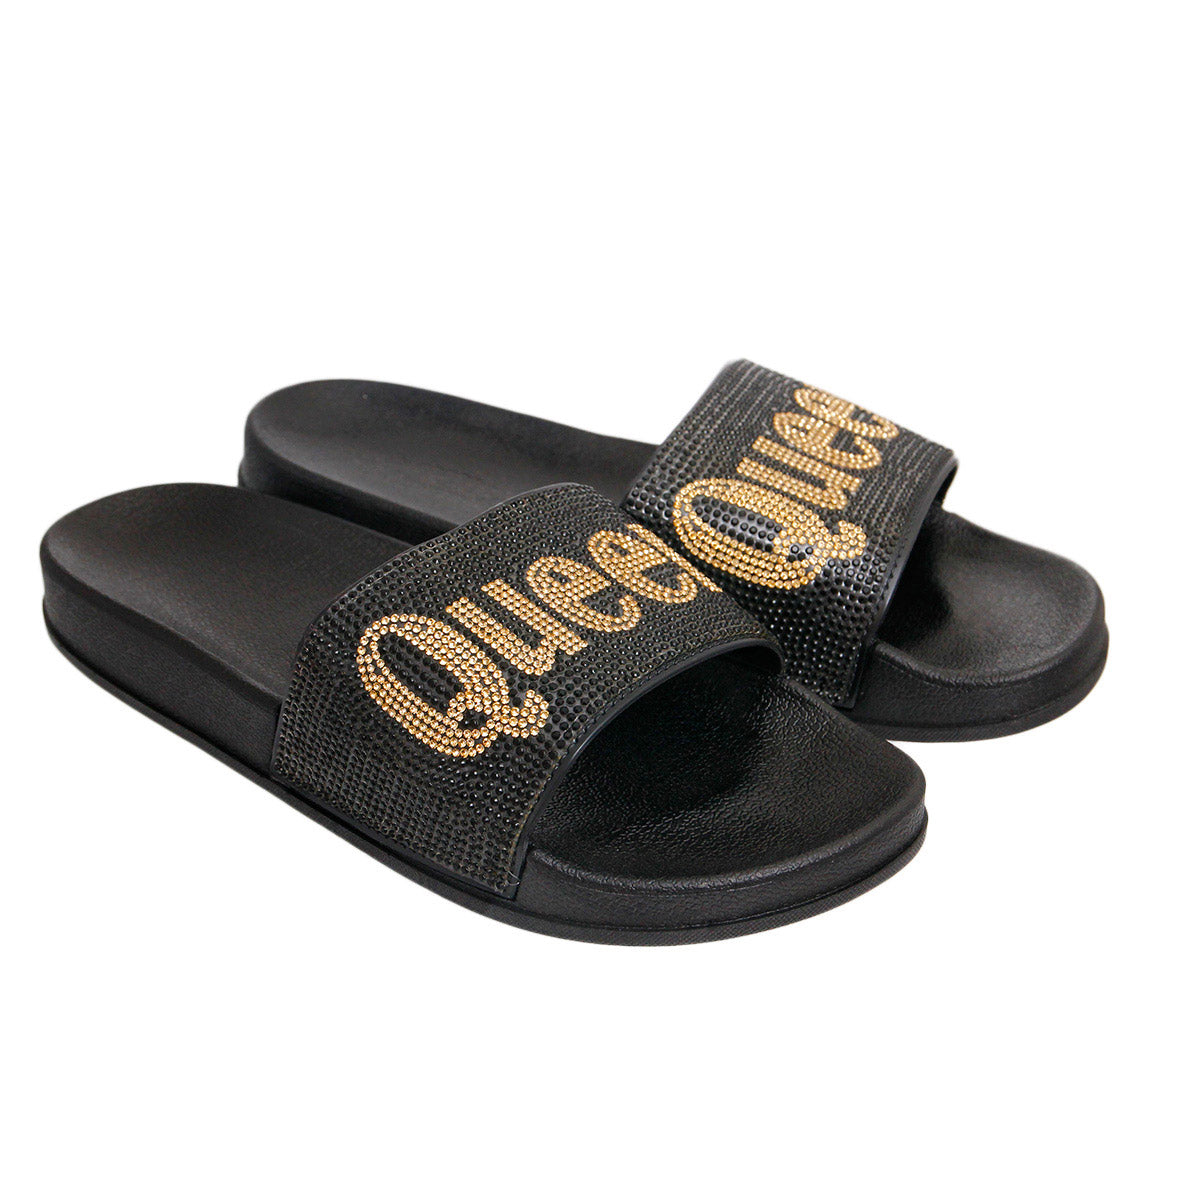 Size 8 Queen Black Slides